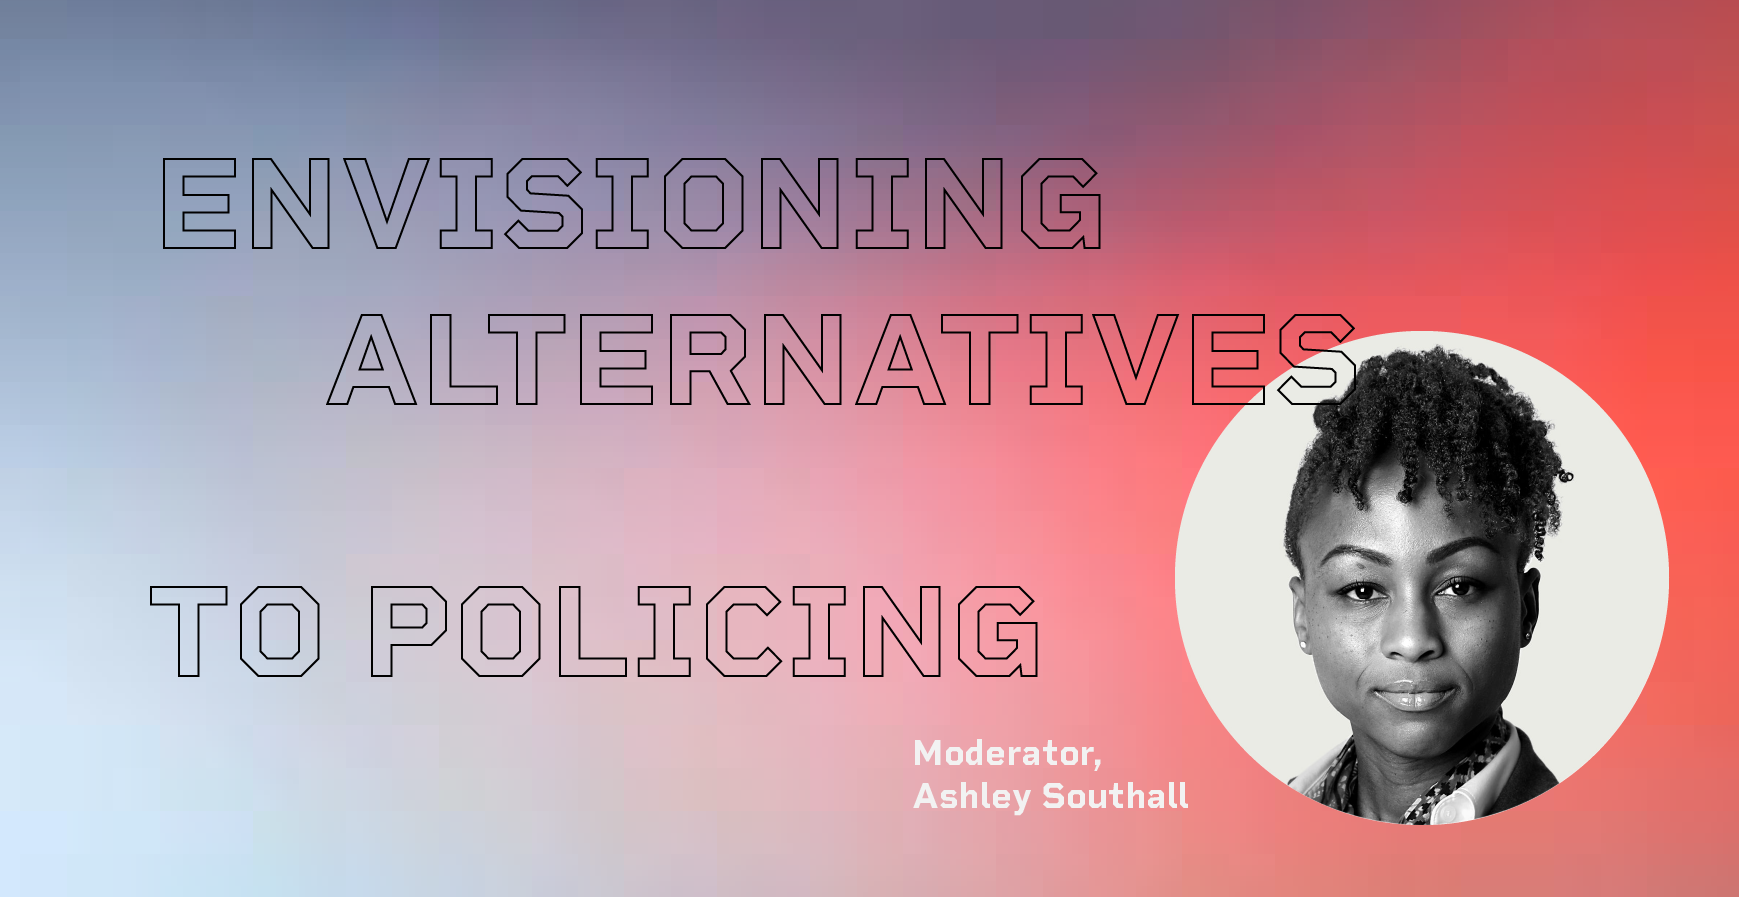 警务标题处理的构想替代方案，Ashley Southall爆头